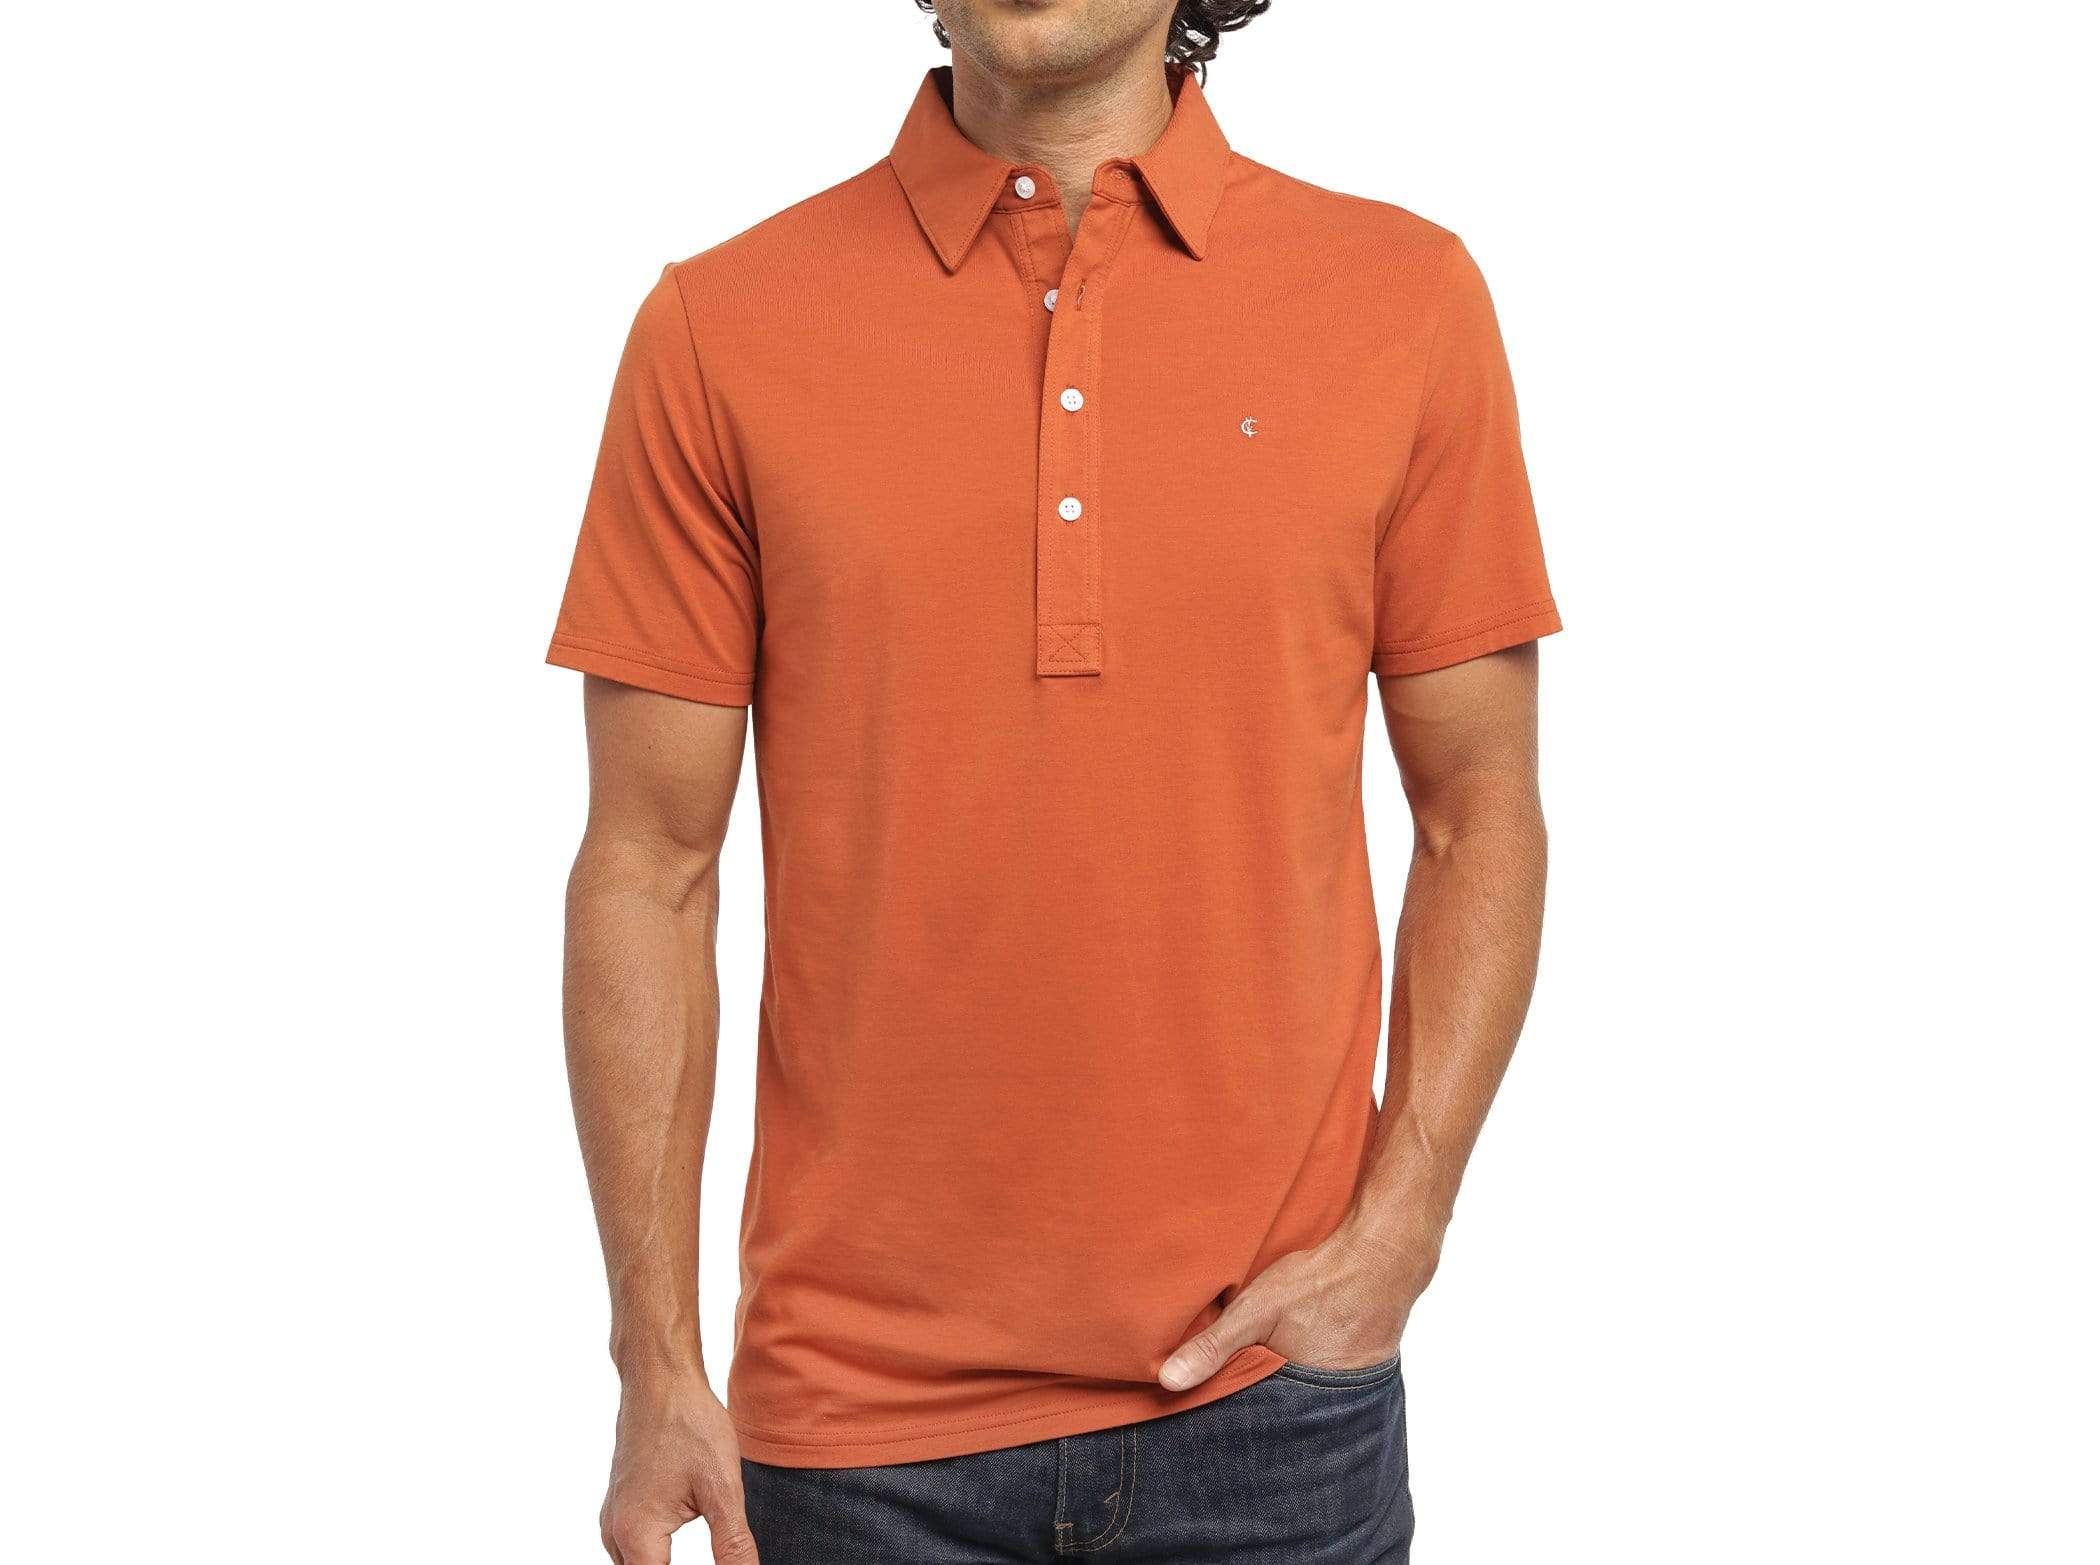 Slim Fit Top-Shelf Range Polo - Burnt Orange – Criquet Shirts